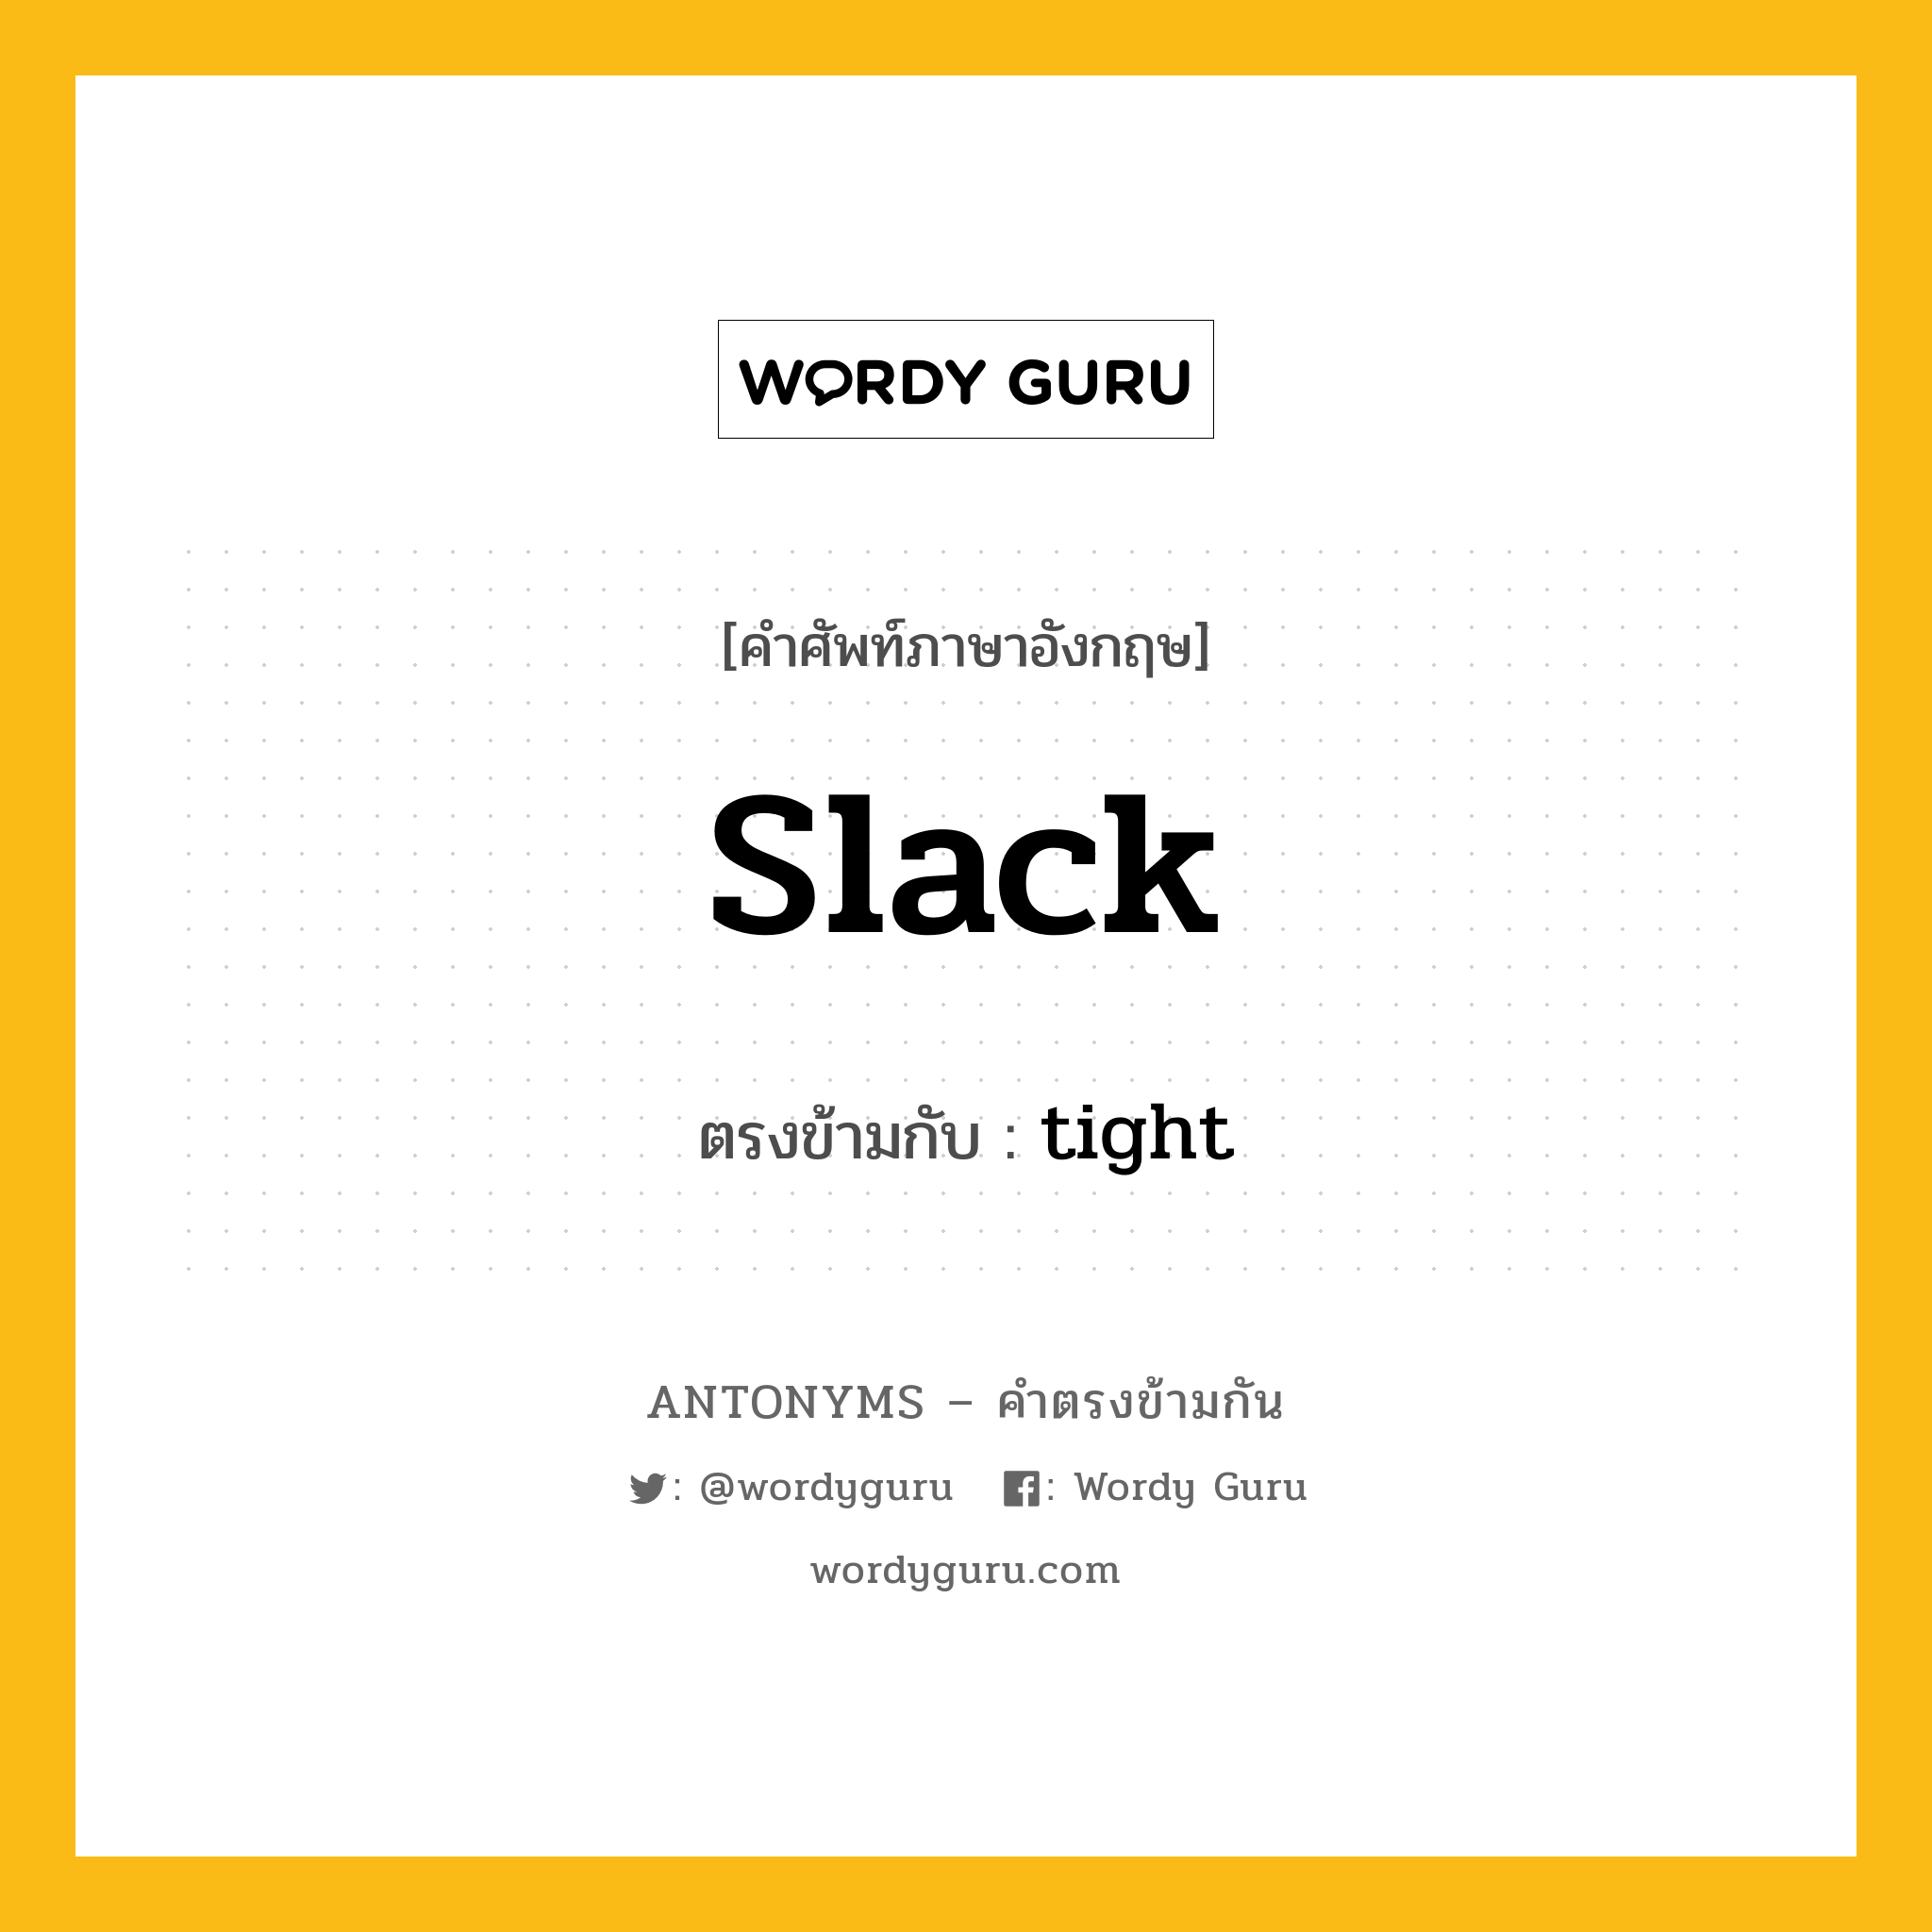 slack เป็นคำตรงข้ามกับคำไหนบ้าง?, คำศัพท์ภาษาอังกฤษ slack ตรงข้ามกับ tight หมวด tight